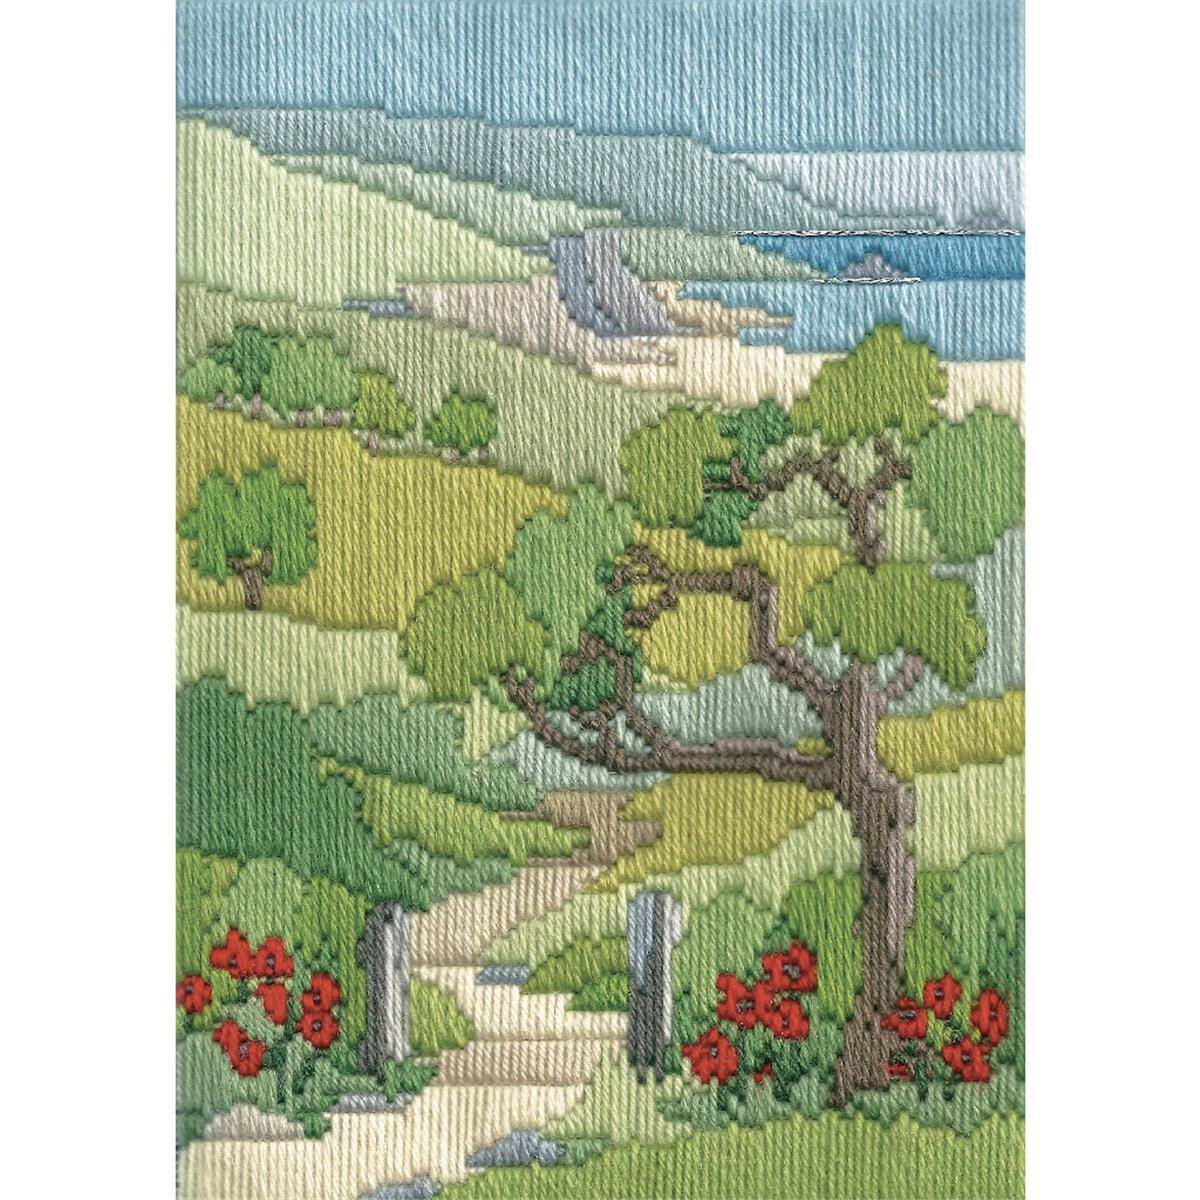 Красочный набор для вышивания пейзажа от Bothy Threads,...